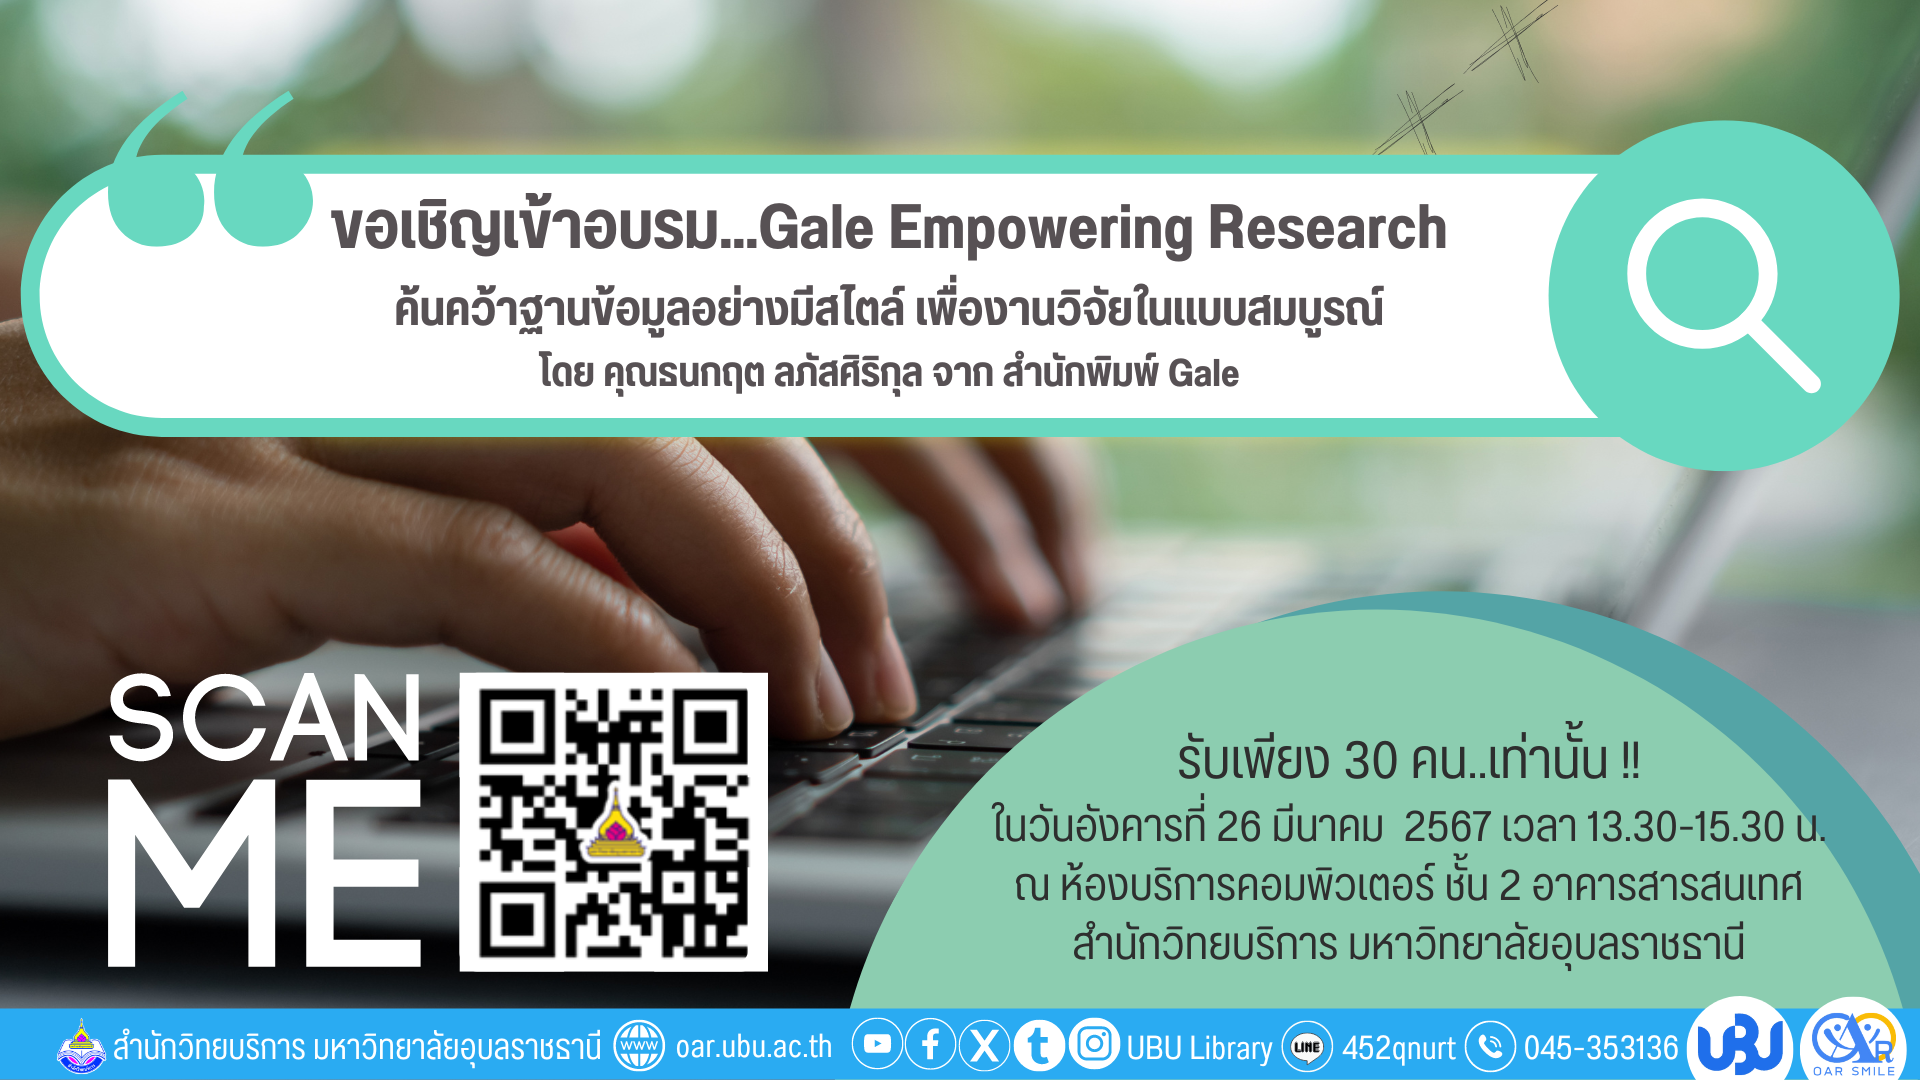 ขอเชิญเข้าร่วมอบรม Gale Empowering Research ค้นคว้าฐานข้อมูลอย่างมีสไตล์ เพื่องานวิจัยในแบบสมบูรณ์